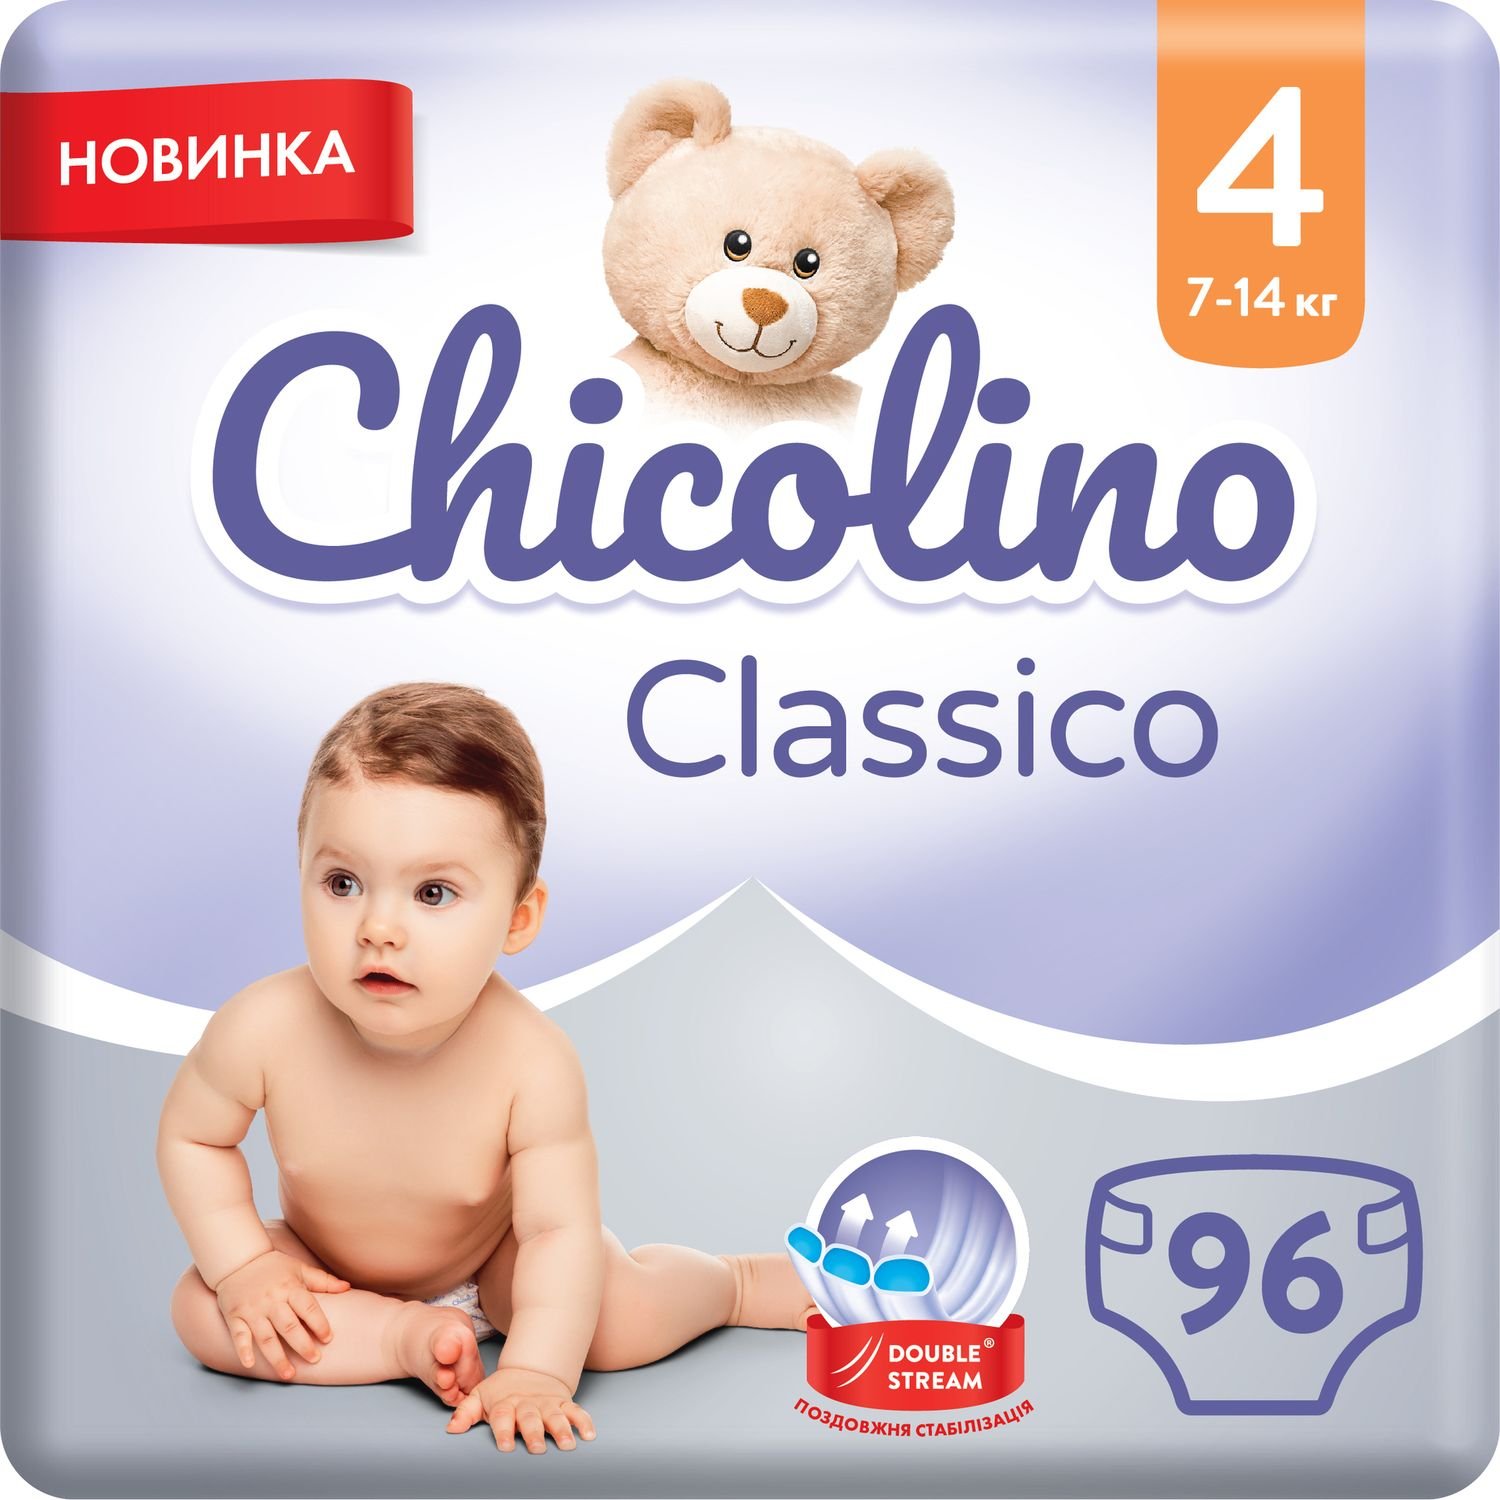 Набір підгузків Chicolino Classico 4 (7-14 кг), 96 шт. (2 уп. по 48 шт.) - фото 1